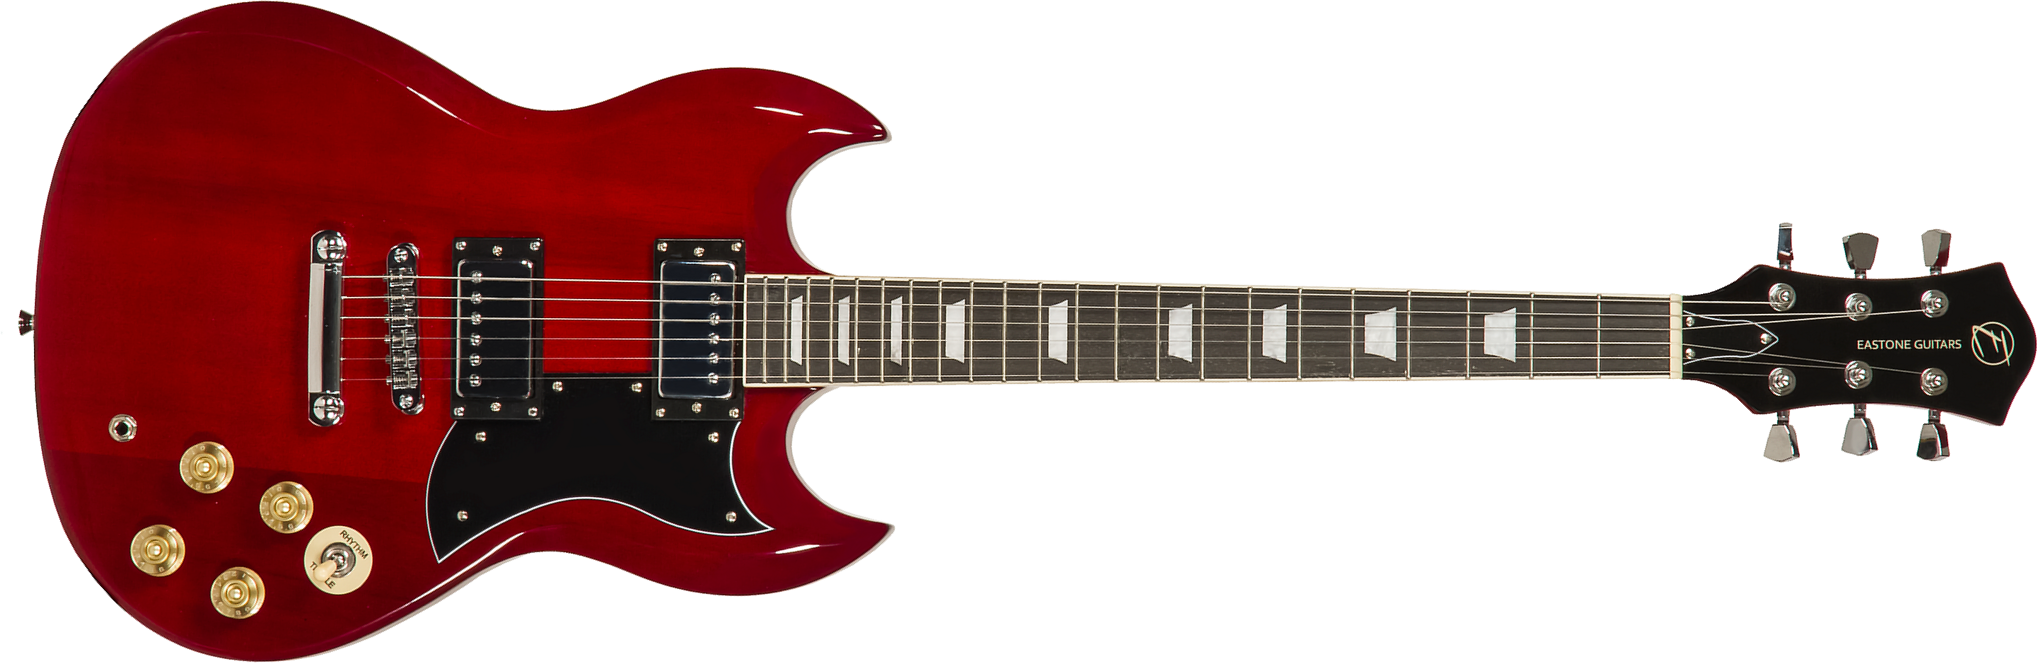 Eastone Sdc70 Hh Ht Pur - Red - Guitare Électrique Double Cut - Main picture